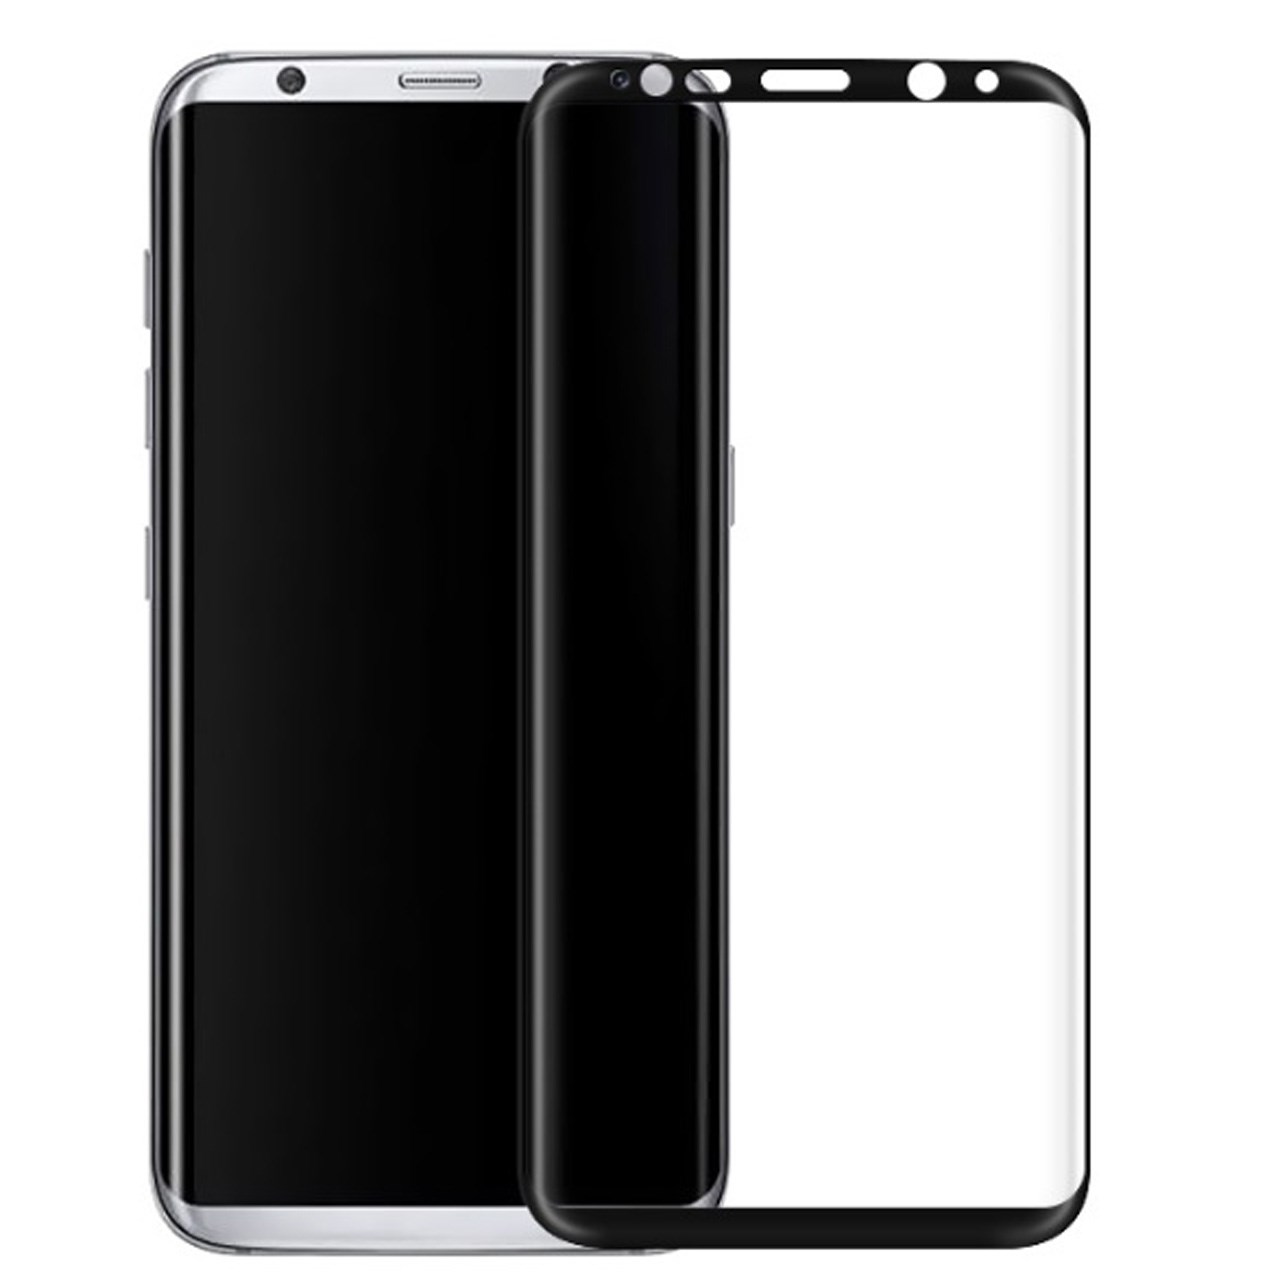 محافظ صفحه نمایش شیشه ای تمپرد مدل Full Cover مناسب برای گوشی موبایل سامسونگ Galaxy S8